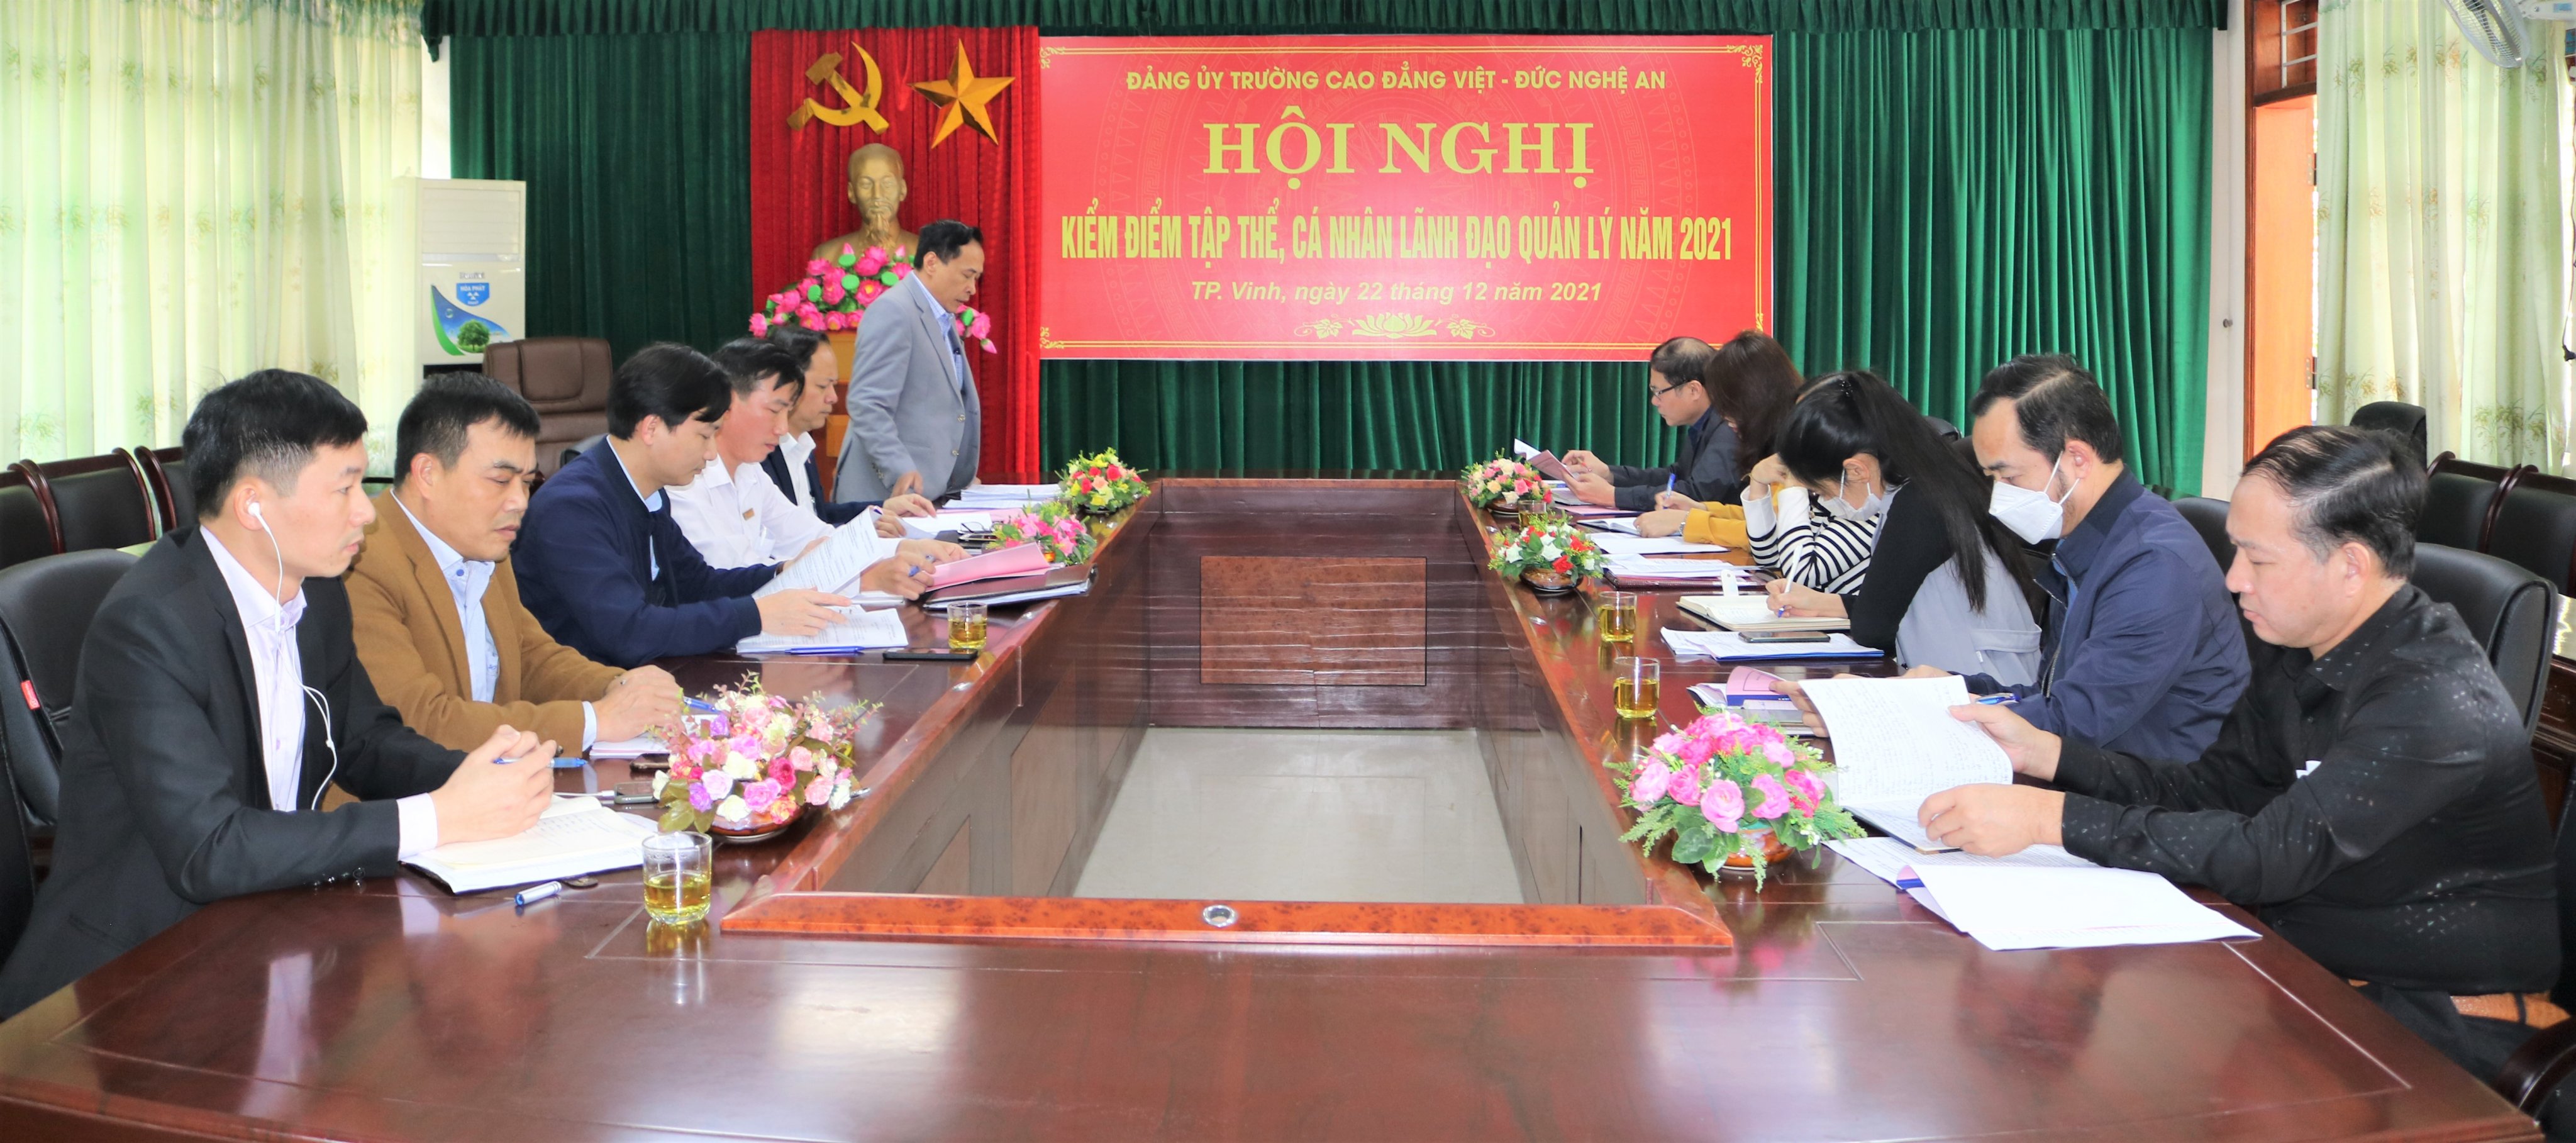  Trường Cao đẳng Việt – Đức Nghệ An tổ chức Hội nghị Kiểm điểm tập thể, cá nhân lãnh đạo quản lý năm 2021